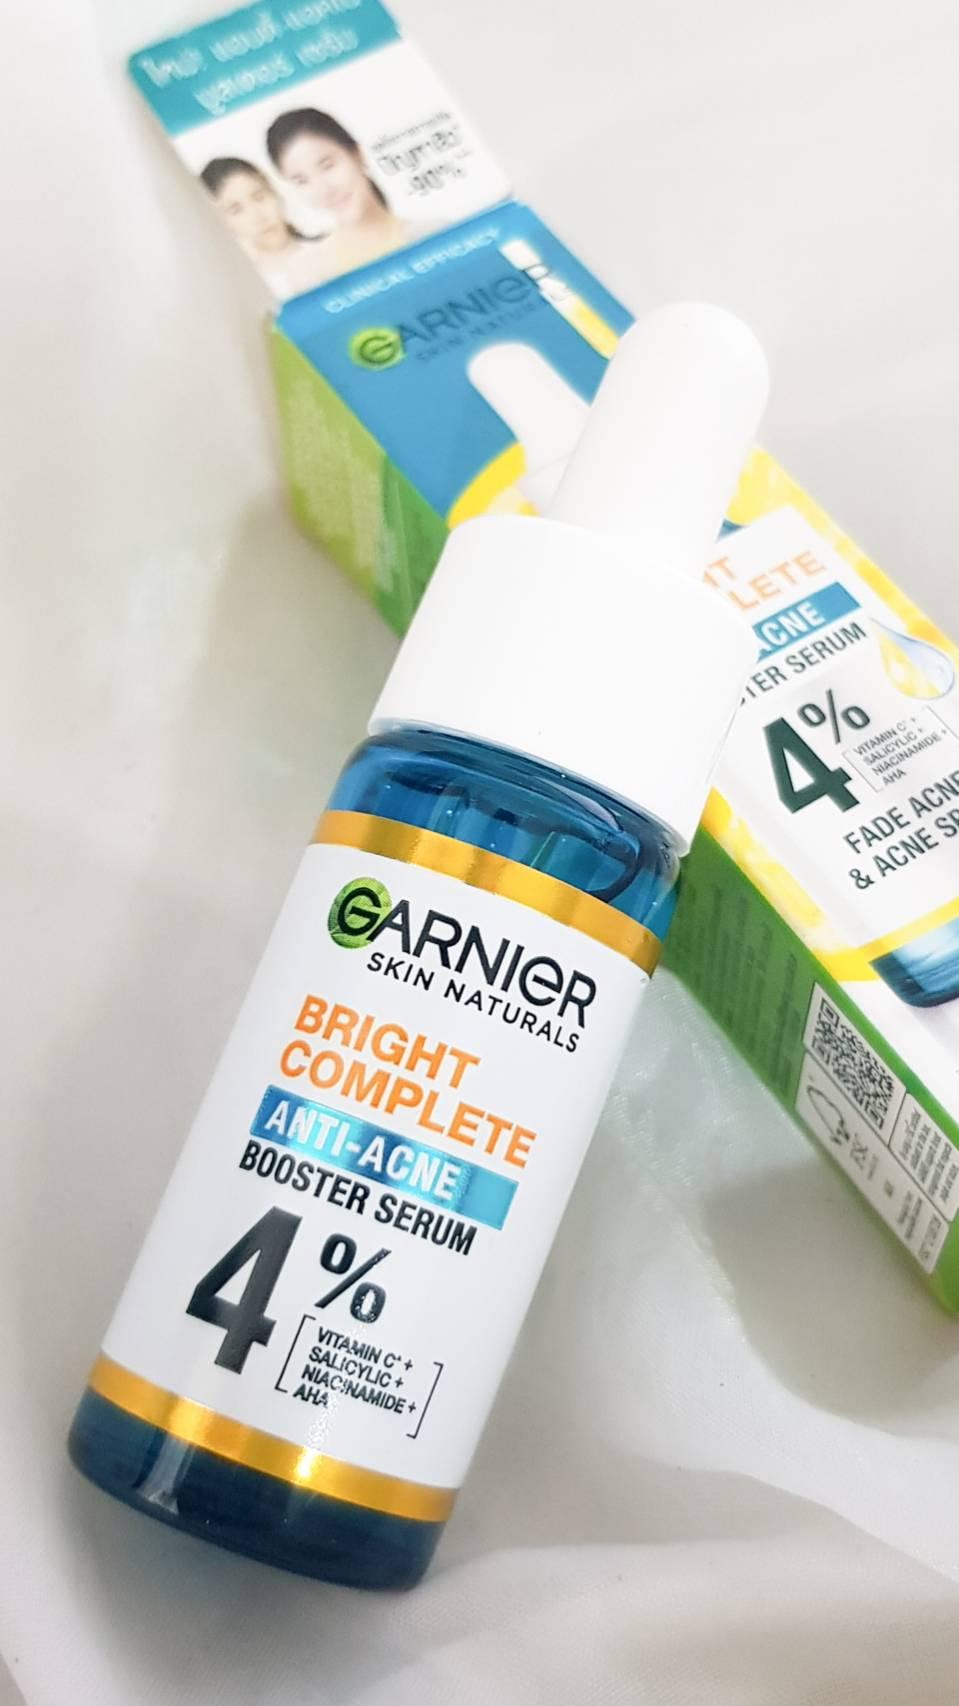 ภาพหน้าปก Garnier Bright Conplete Anti-Acne Booster Serum ที่:0